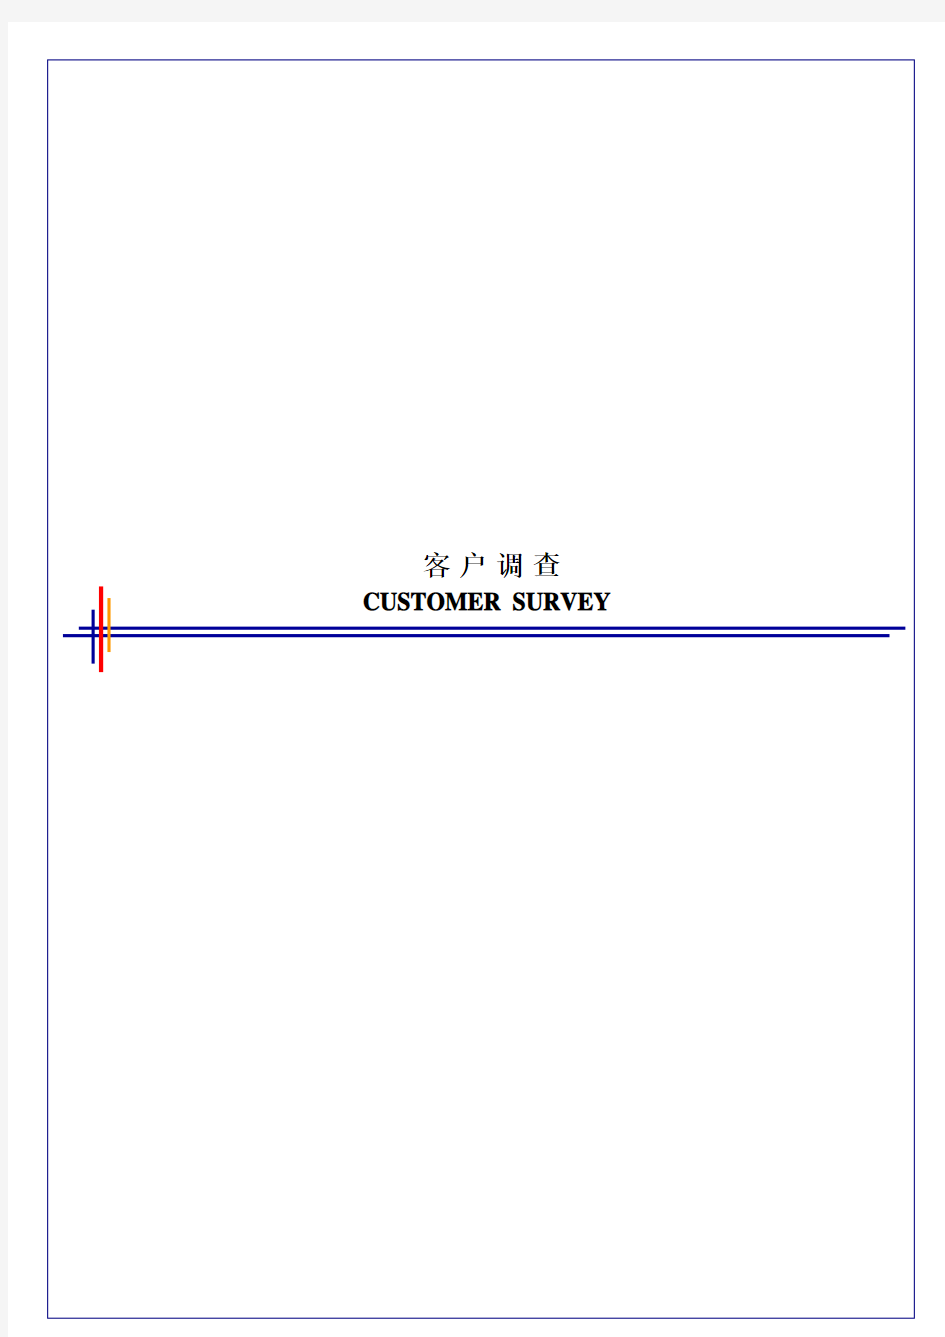 毕博-管理咨询工具方法—CustomerSurveyTemplate-Chinese